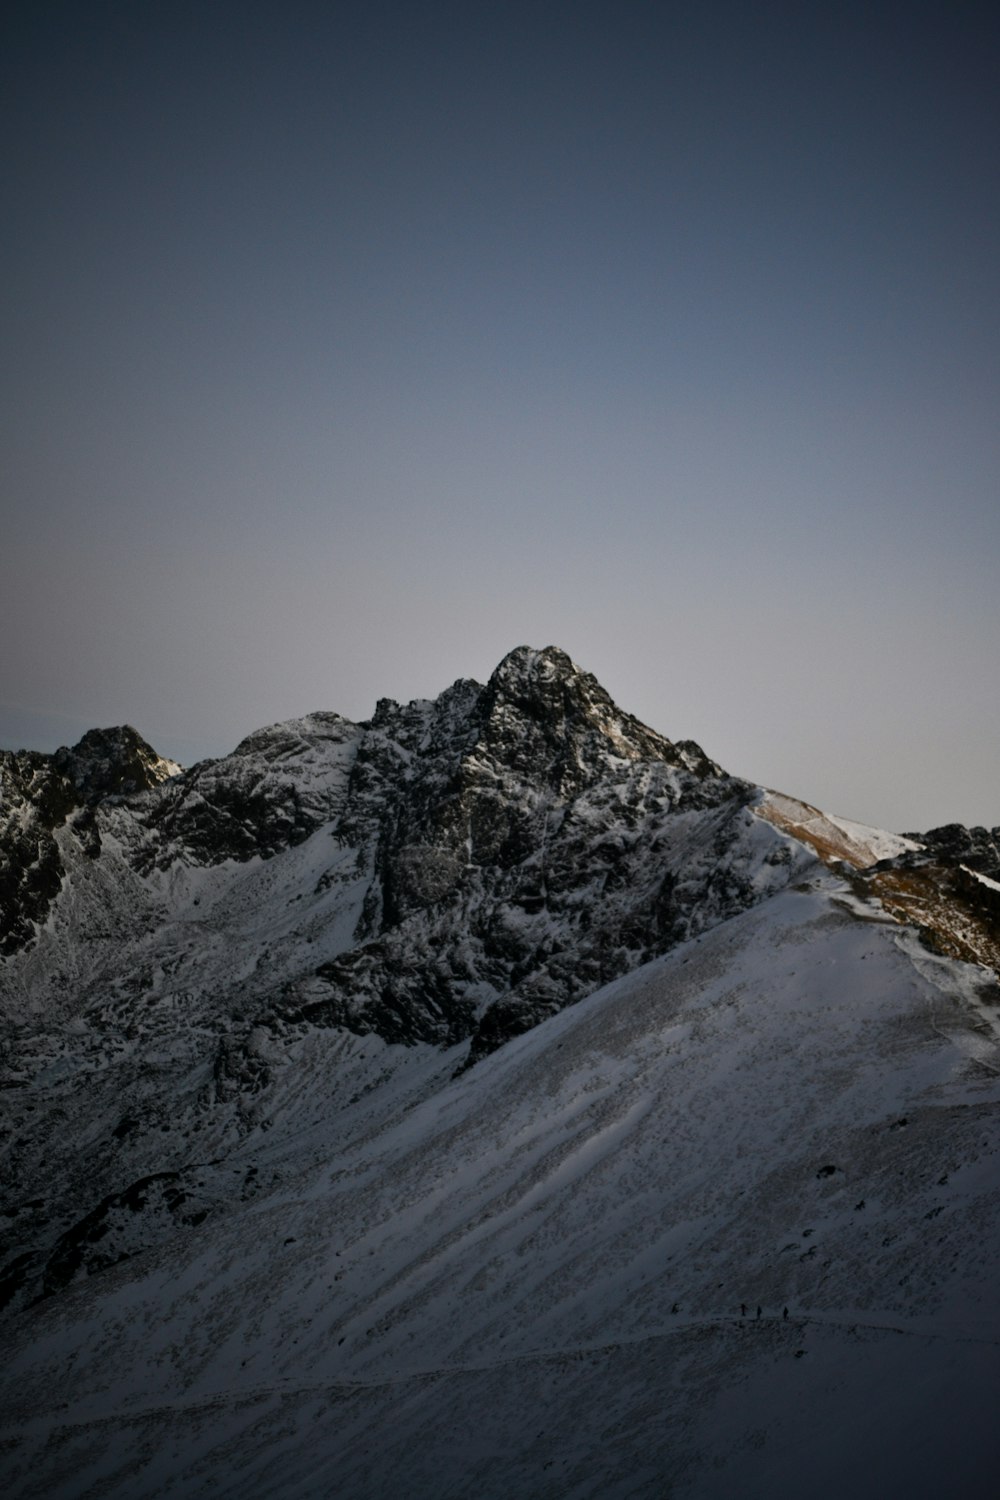 Montaña cubierta de nieve bajo el cielo azul durante el día